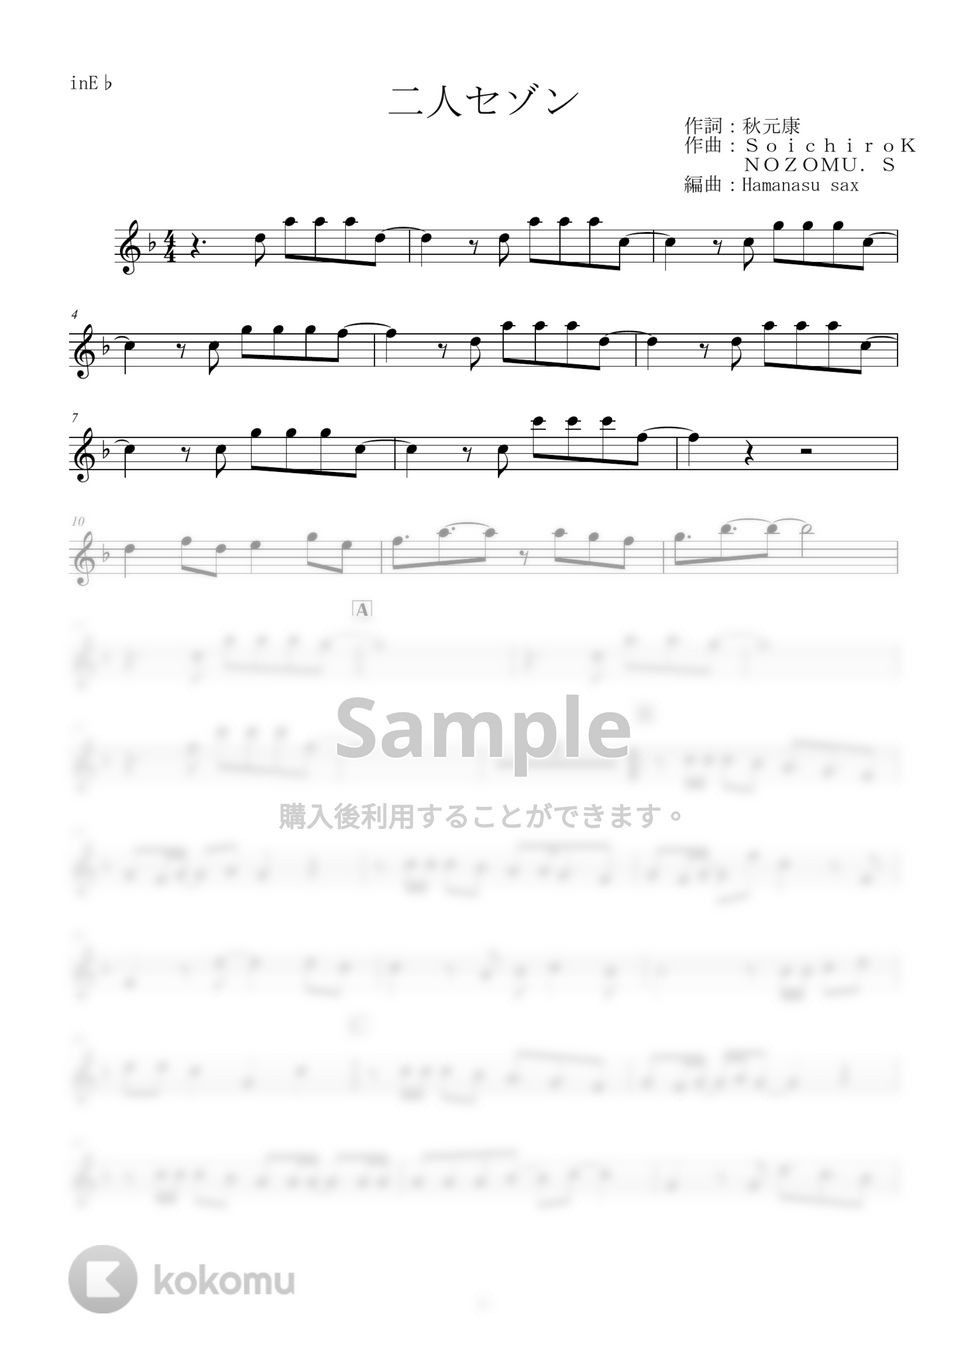 欅坂46 - 二人セゾン (inE♭) by はまなす